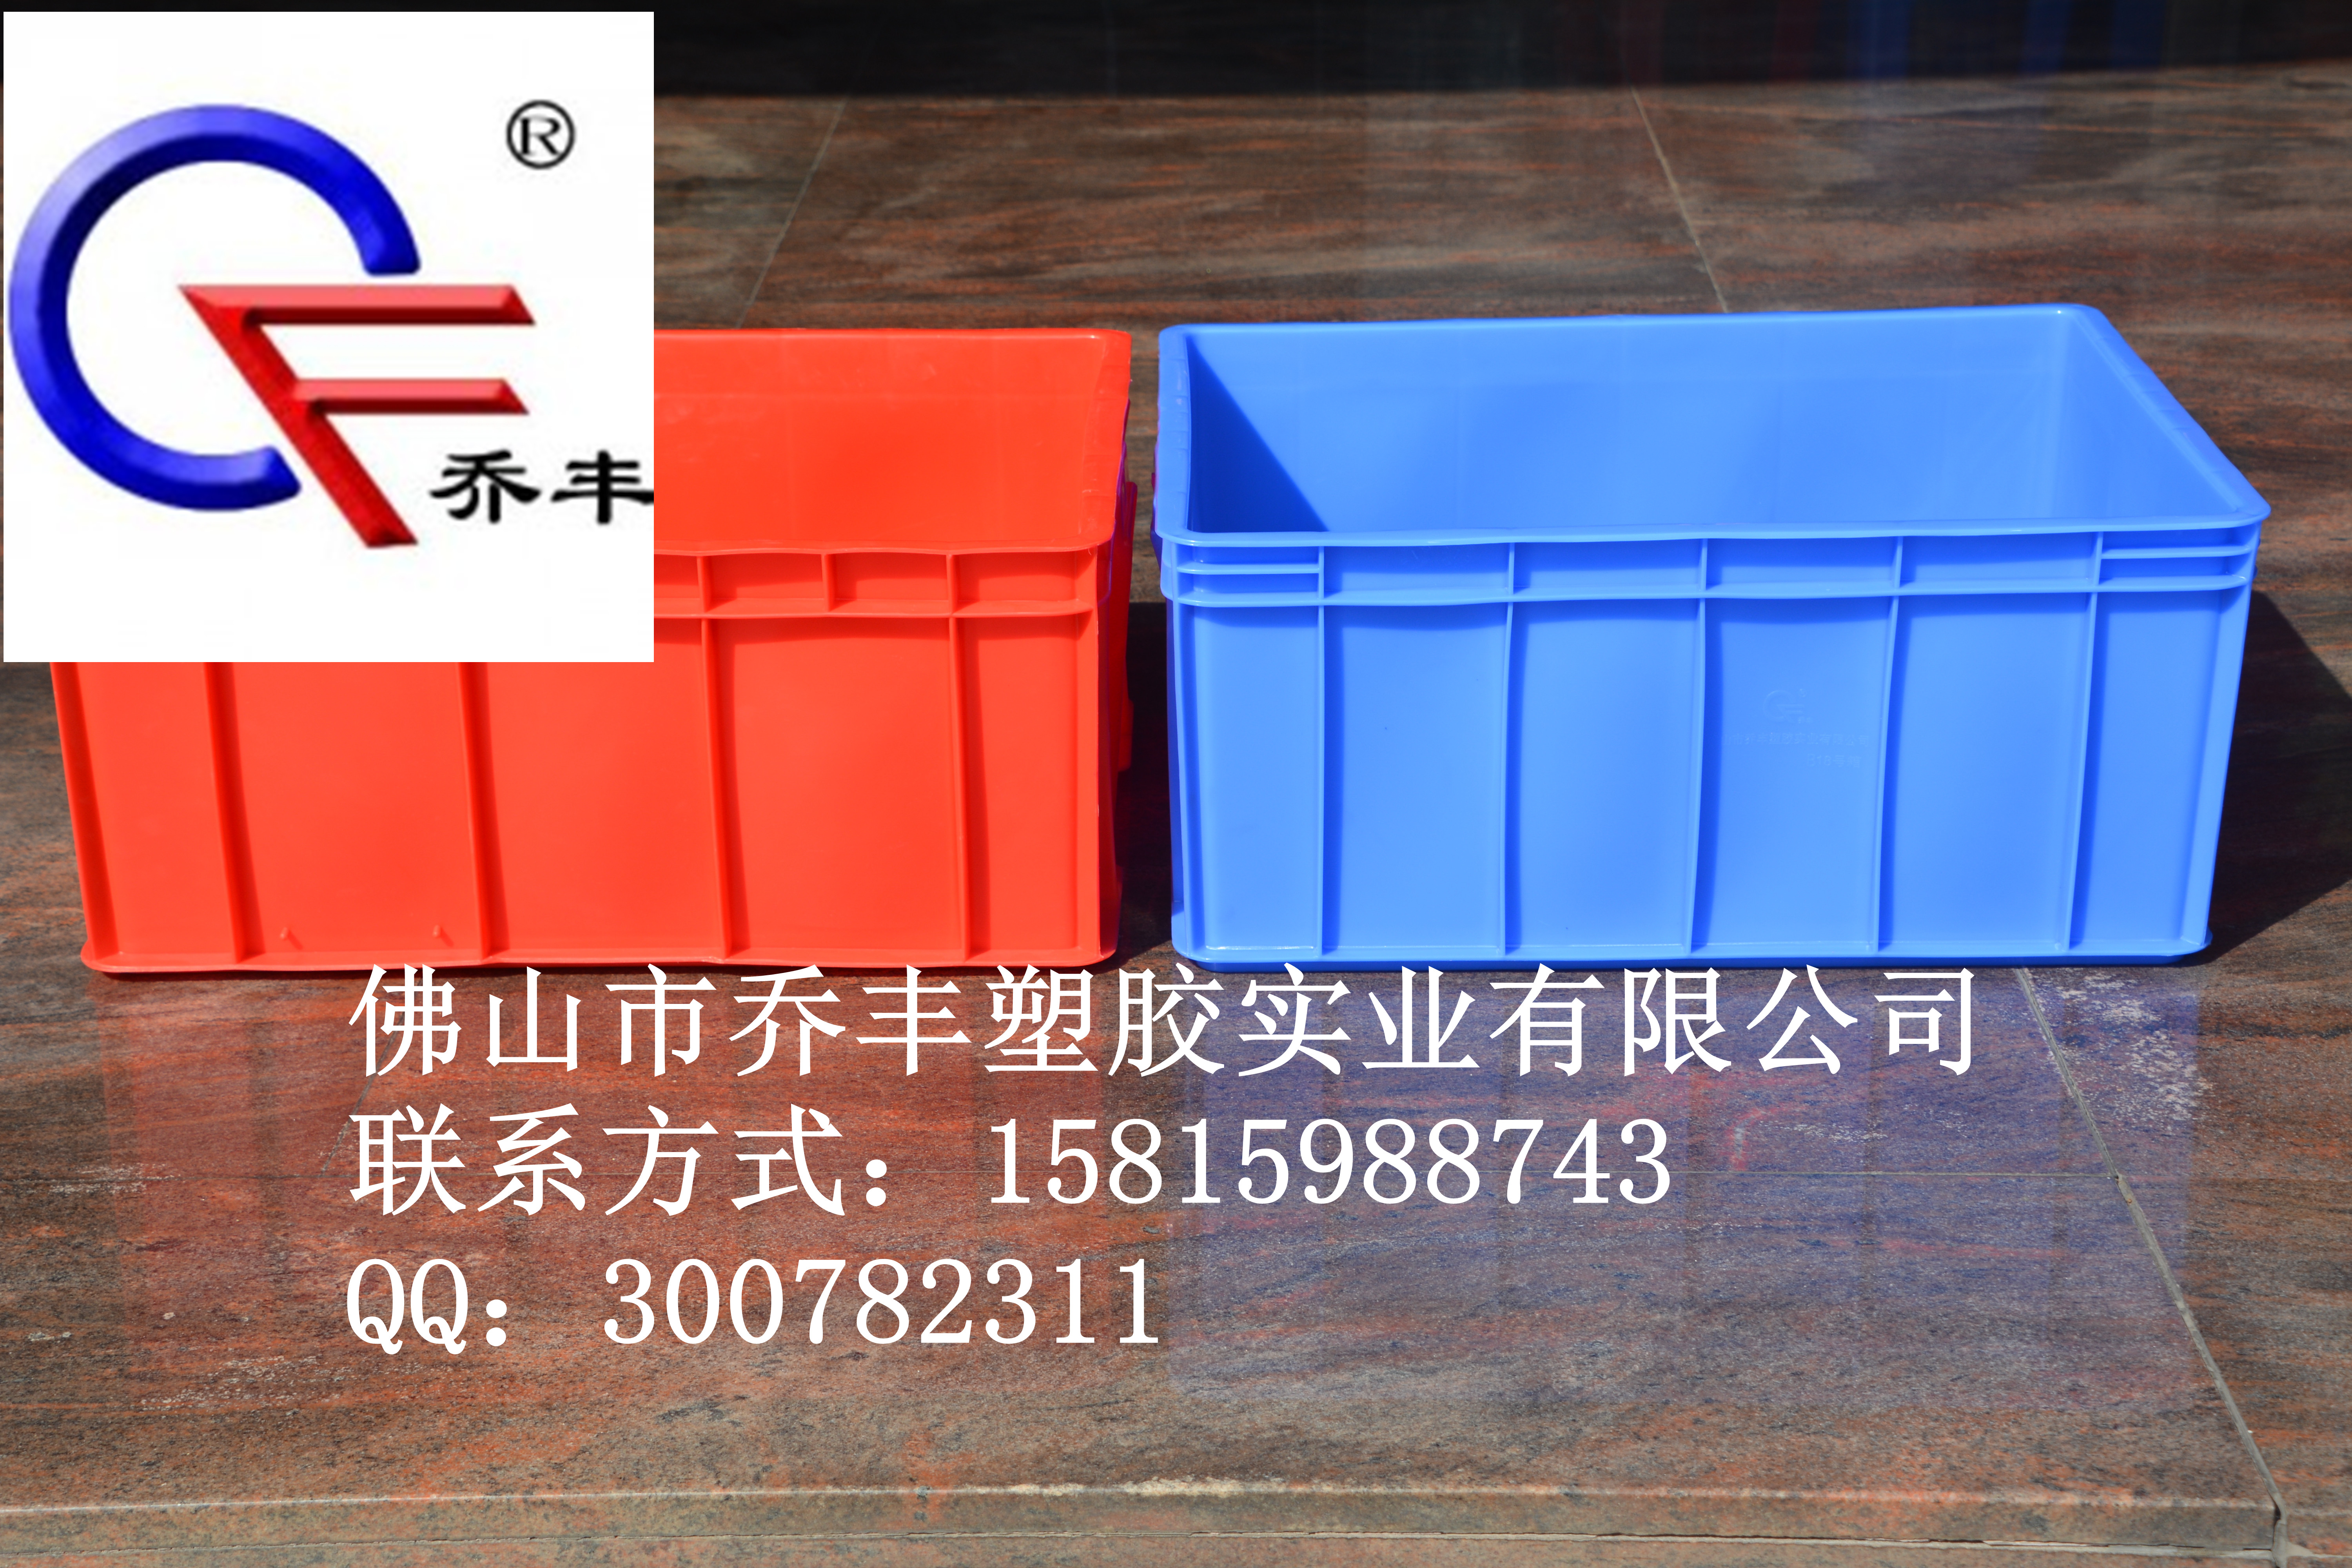 株洲通用型乔丰塑料周转箱生产厂家，株洲通用型乔丰塑料周转箱，